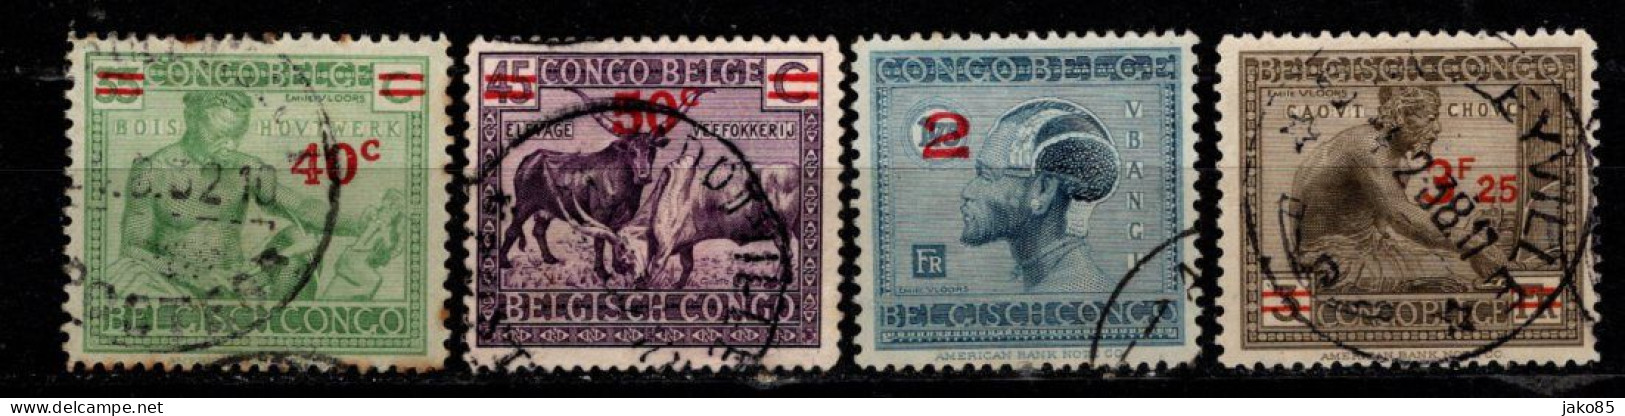 - CONGO BELGE - 1931 / 32 - YT N° 159 / 161A - Oblitérés - Surchargés - Série Complète - Ungebraucht